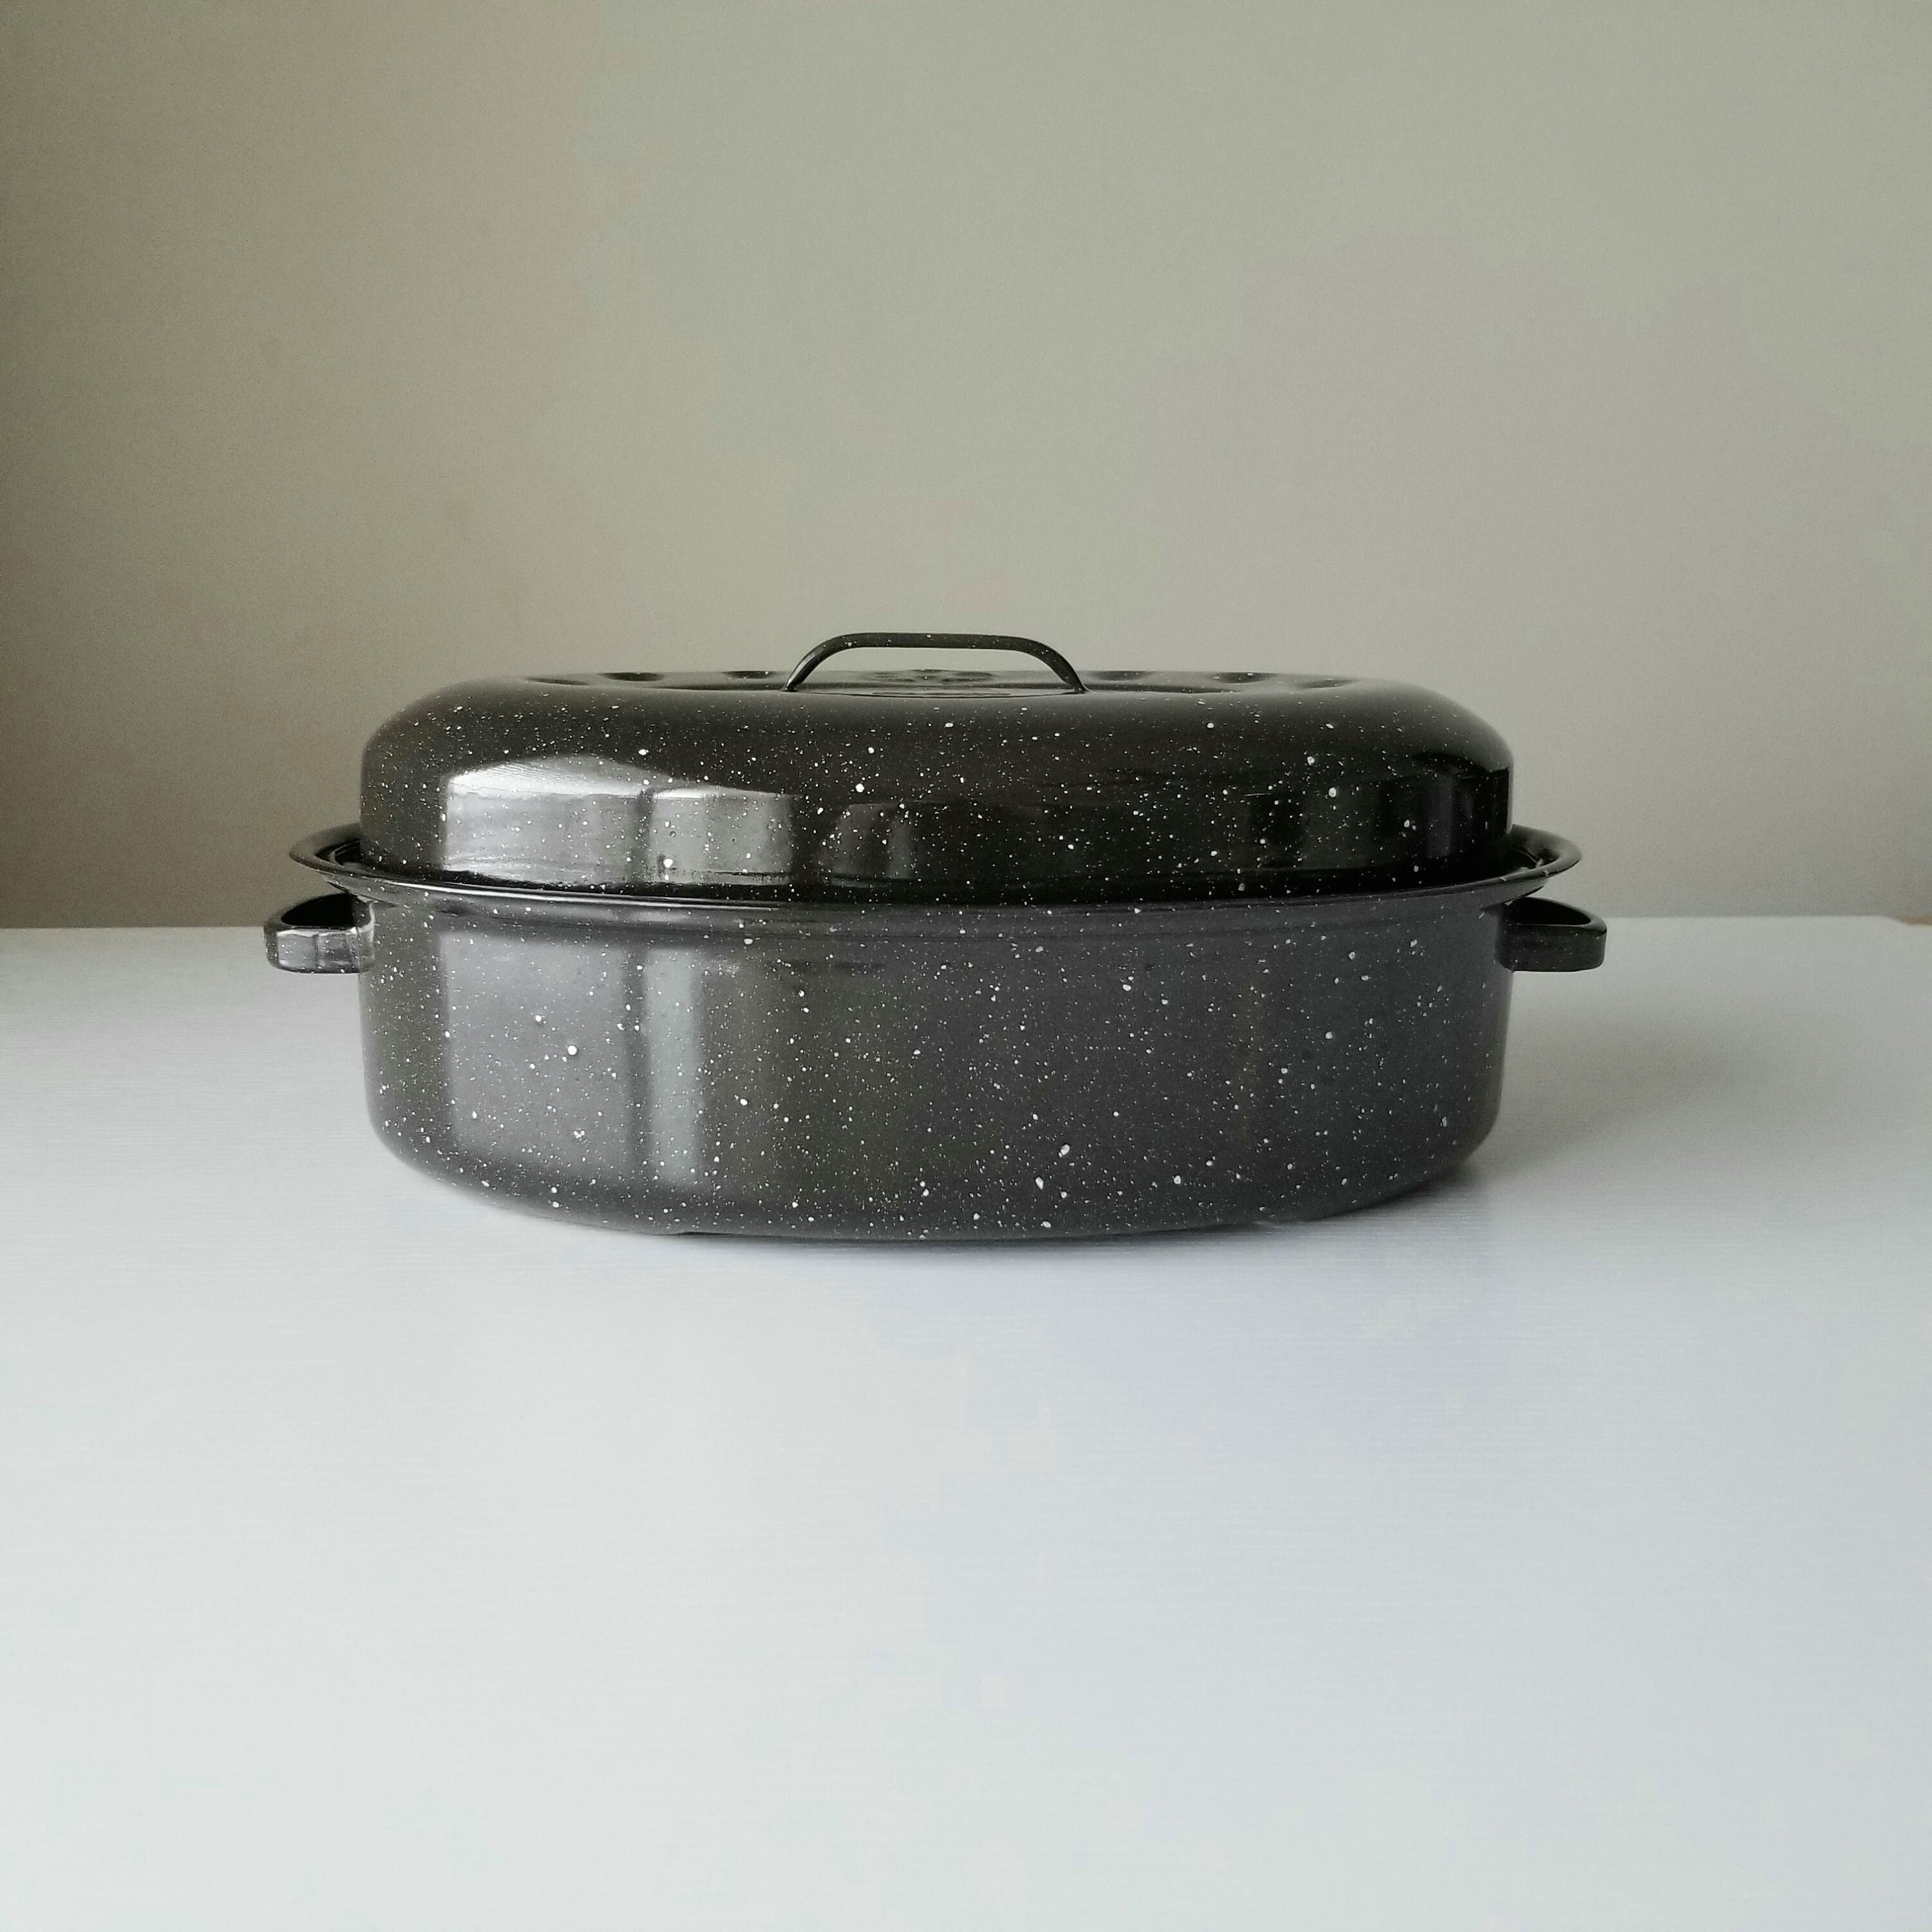 Vintage rolled edge Enamel baking roasting pan w/ perforated broiler Top  12x18